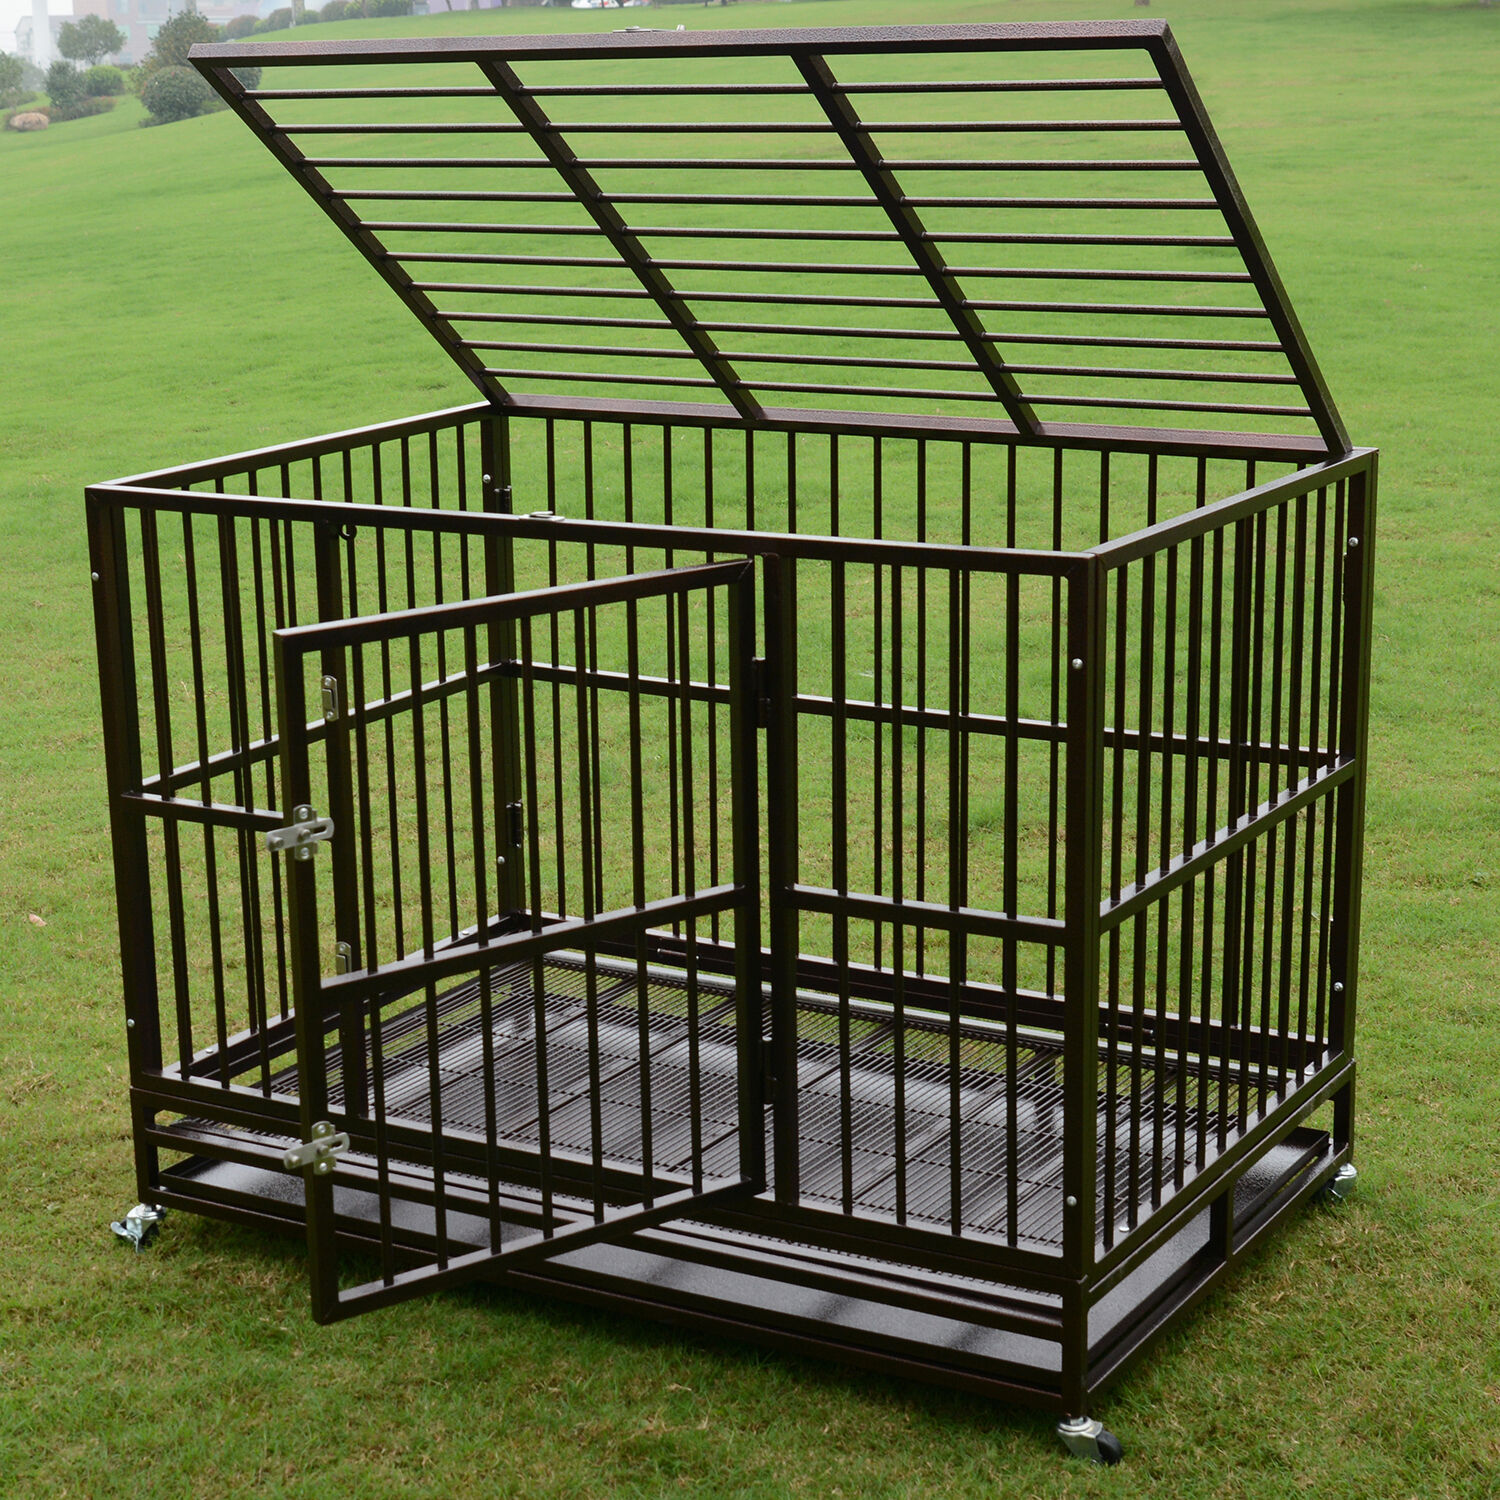 3xl 48" Metal Folding Dog Cage Crate Kennel Pet Playpen W/tray&wheels Heavy Duty